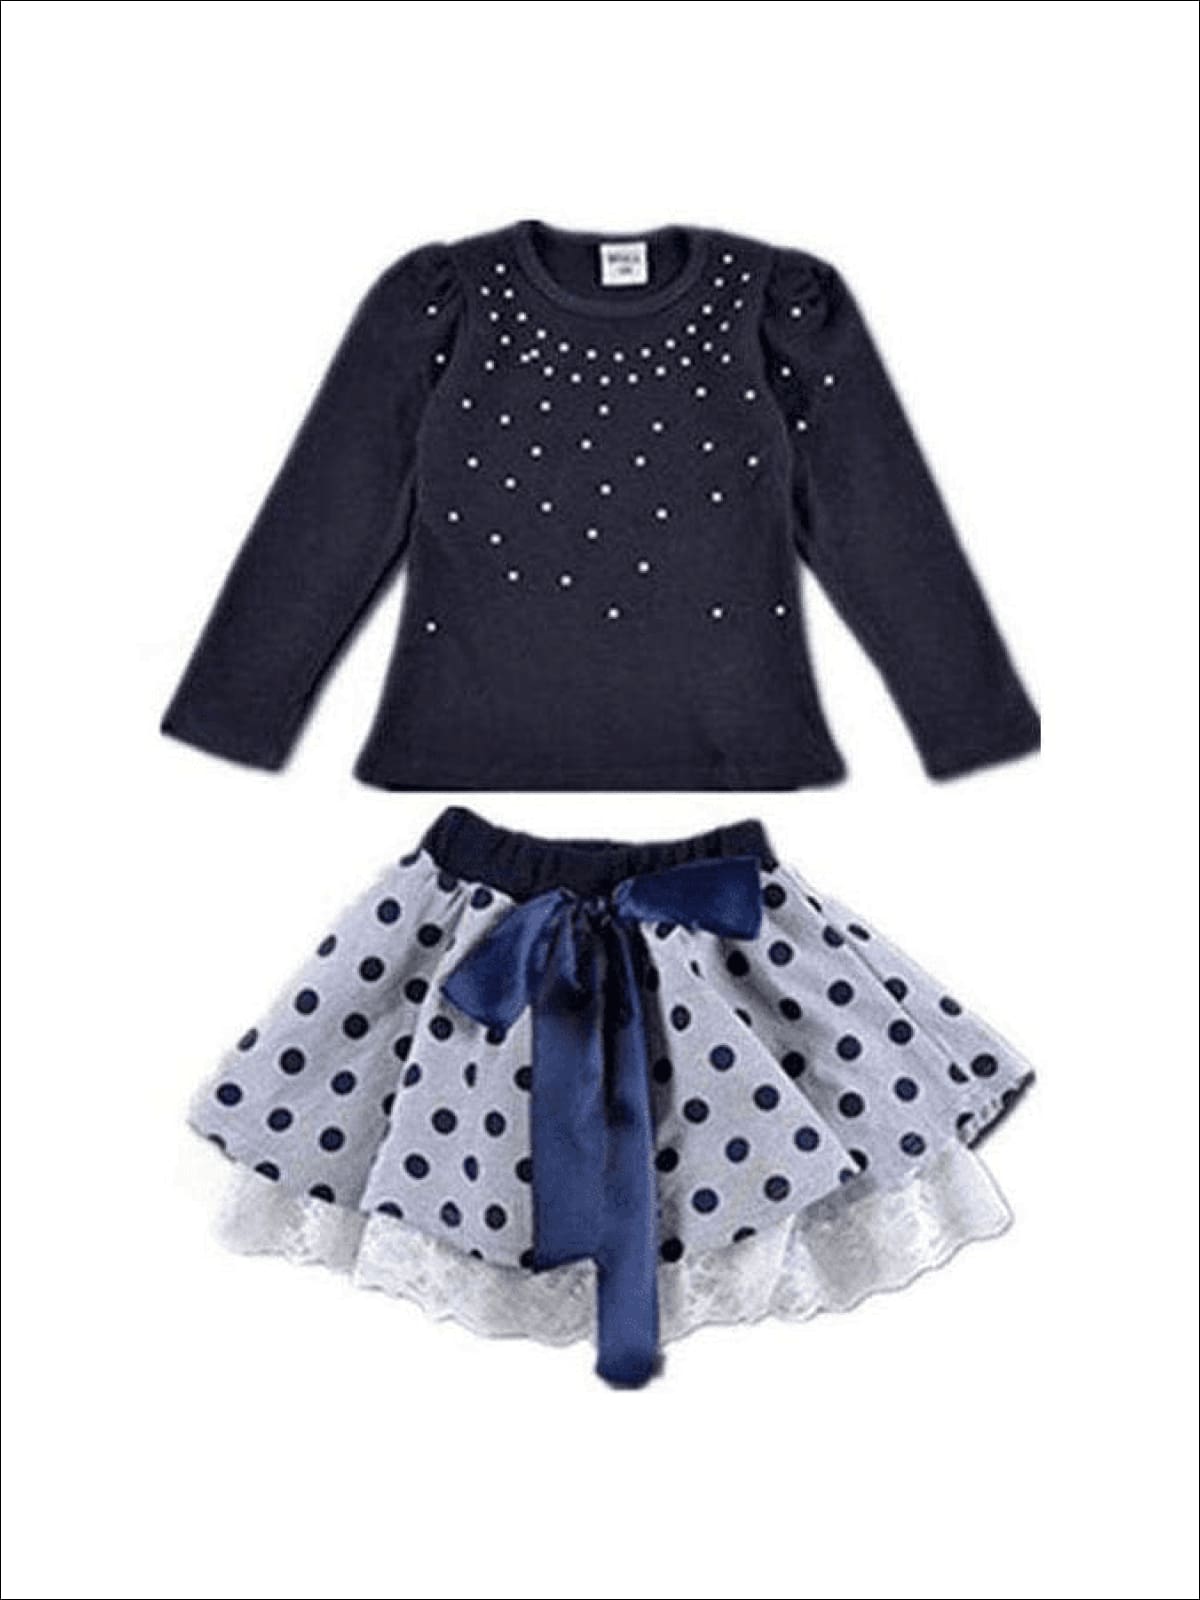 Girls Preppy Blue Embellished Sweater Top & Polka Dot Lace Trimmed Skirt Set - 3T - Girls Fall Dressy Set